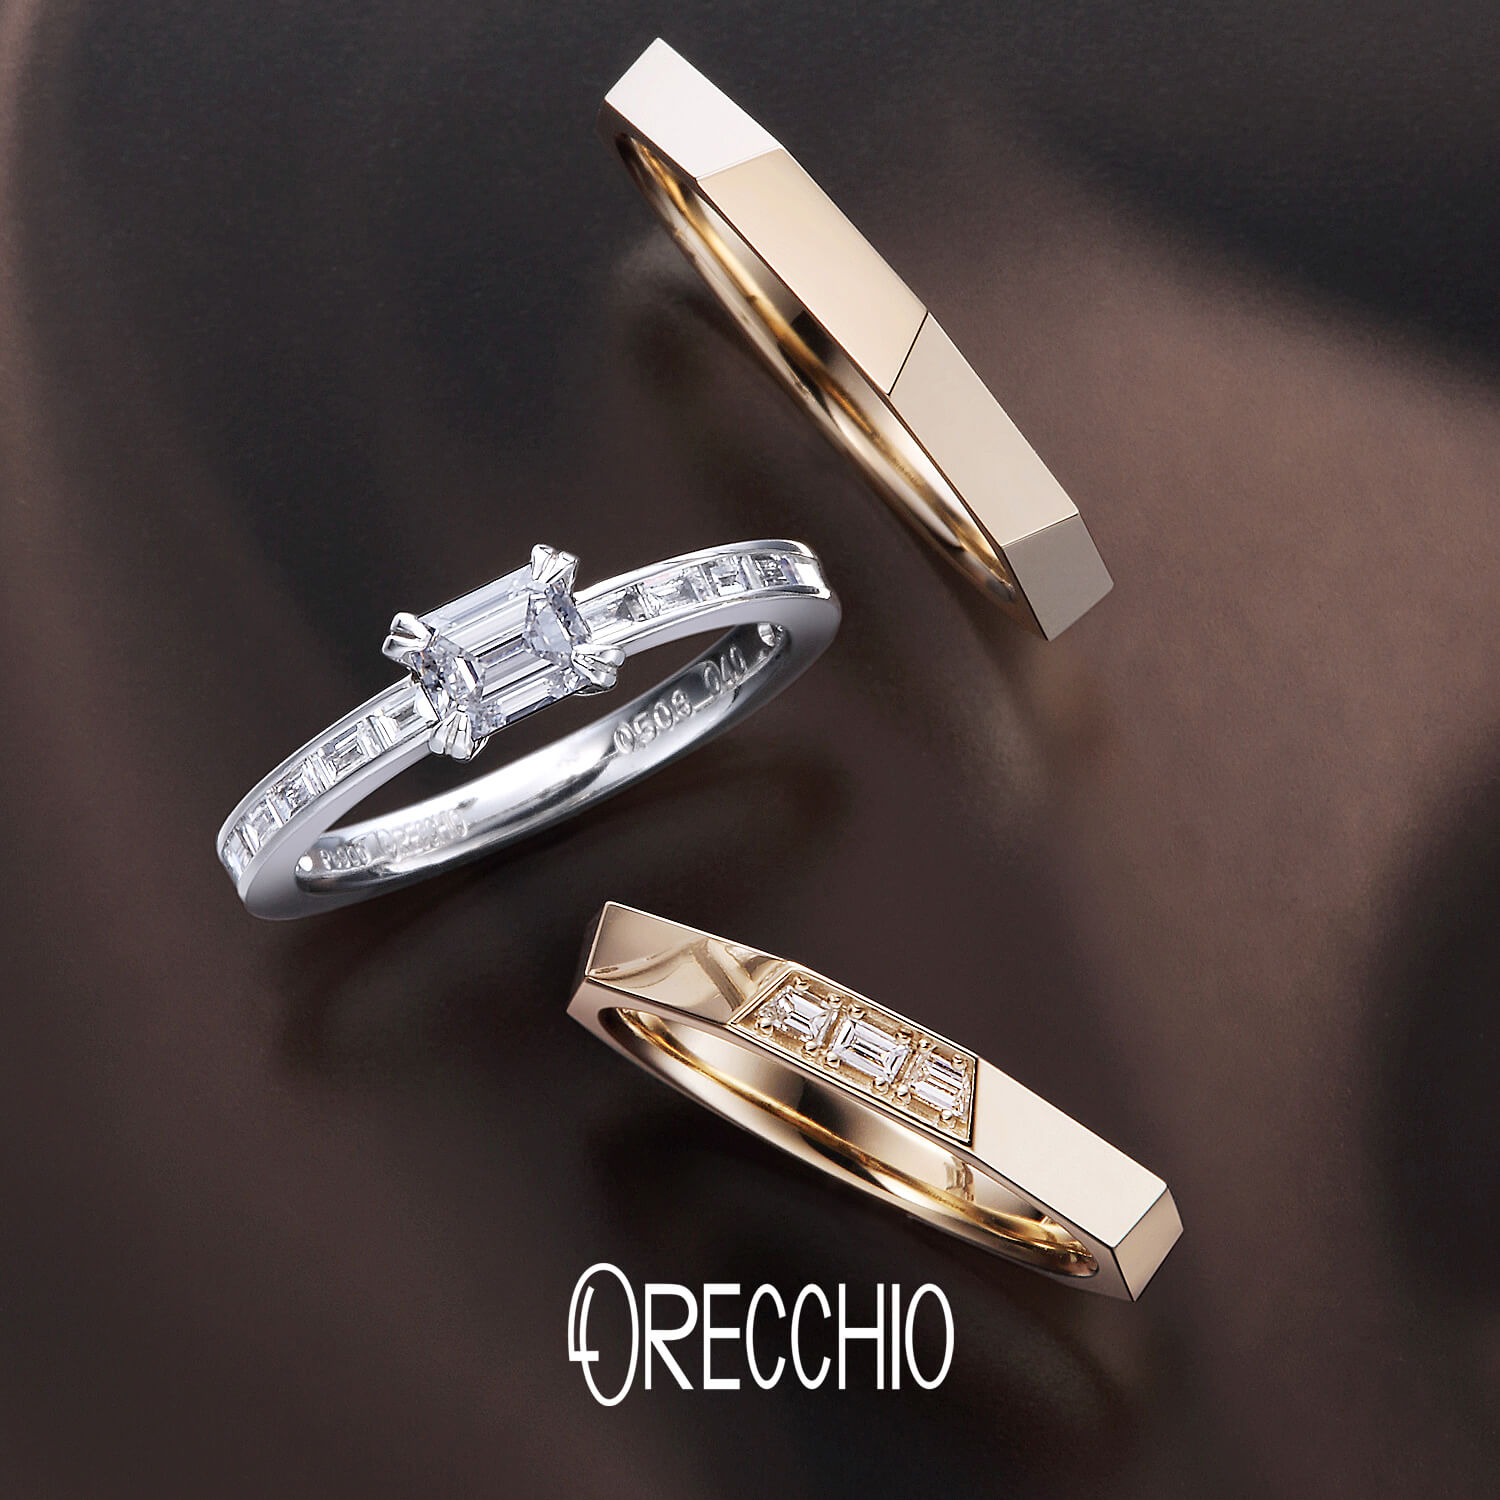 ORECCHIOオレッキオの婚約指輪amanアマンAE-1303と結婚指輪safariサファリFM-2229とFM-2227